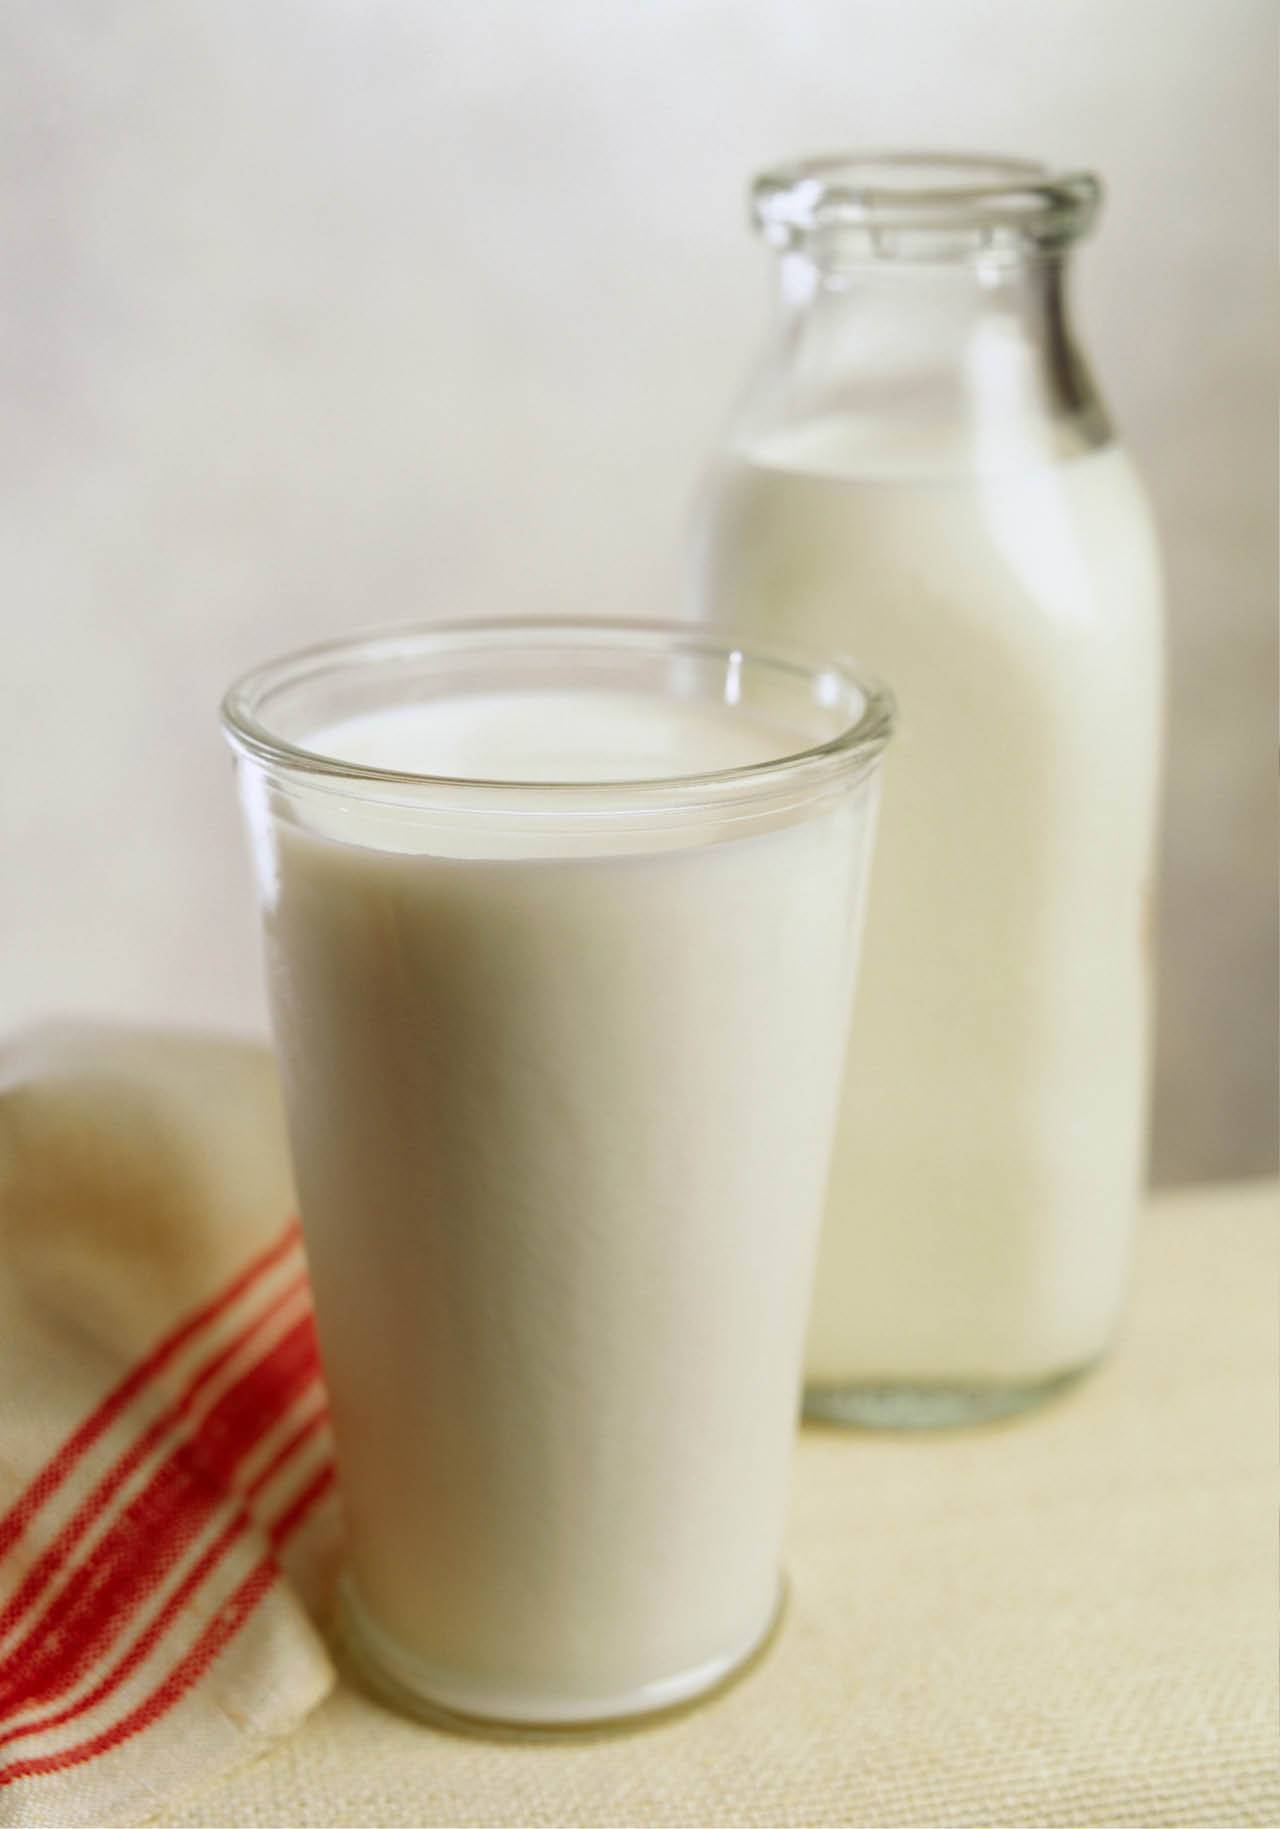 alimentos procesados saludables leche pasteurizada